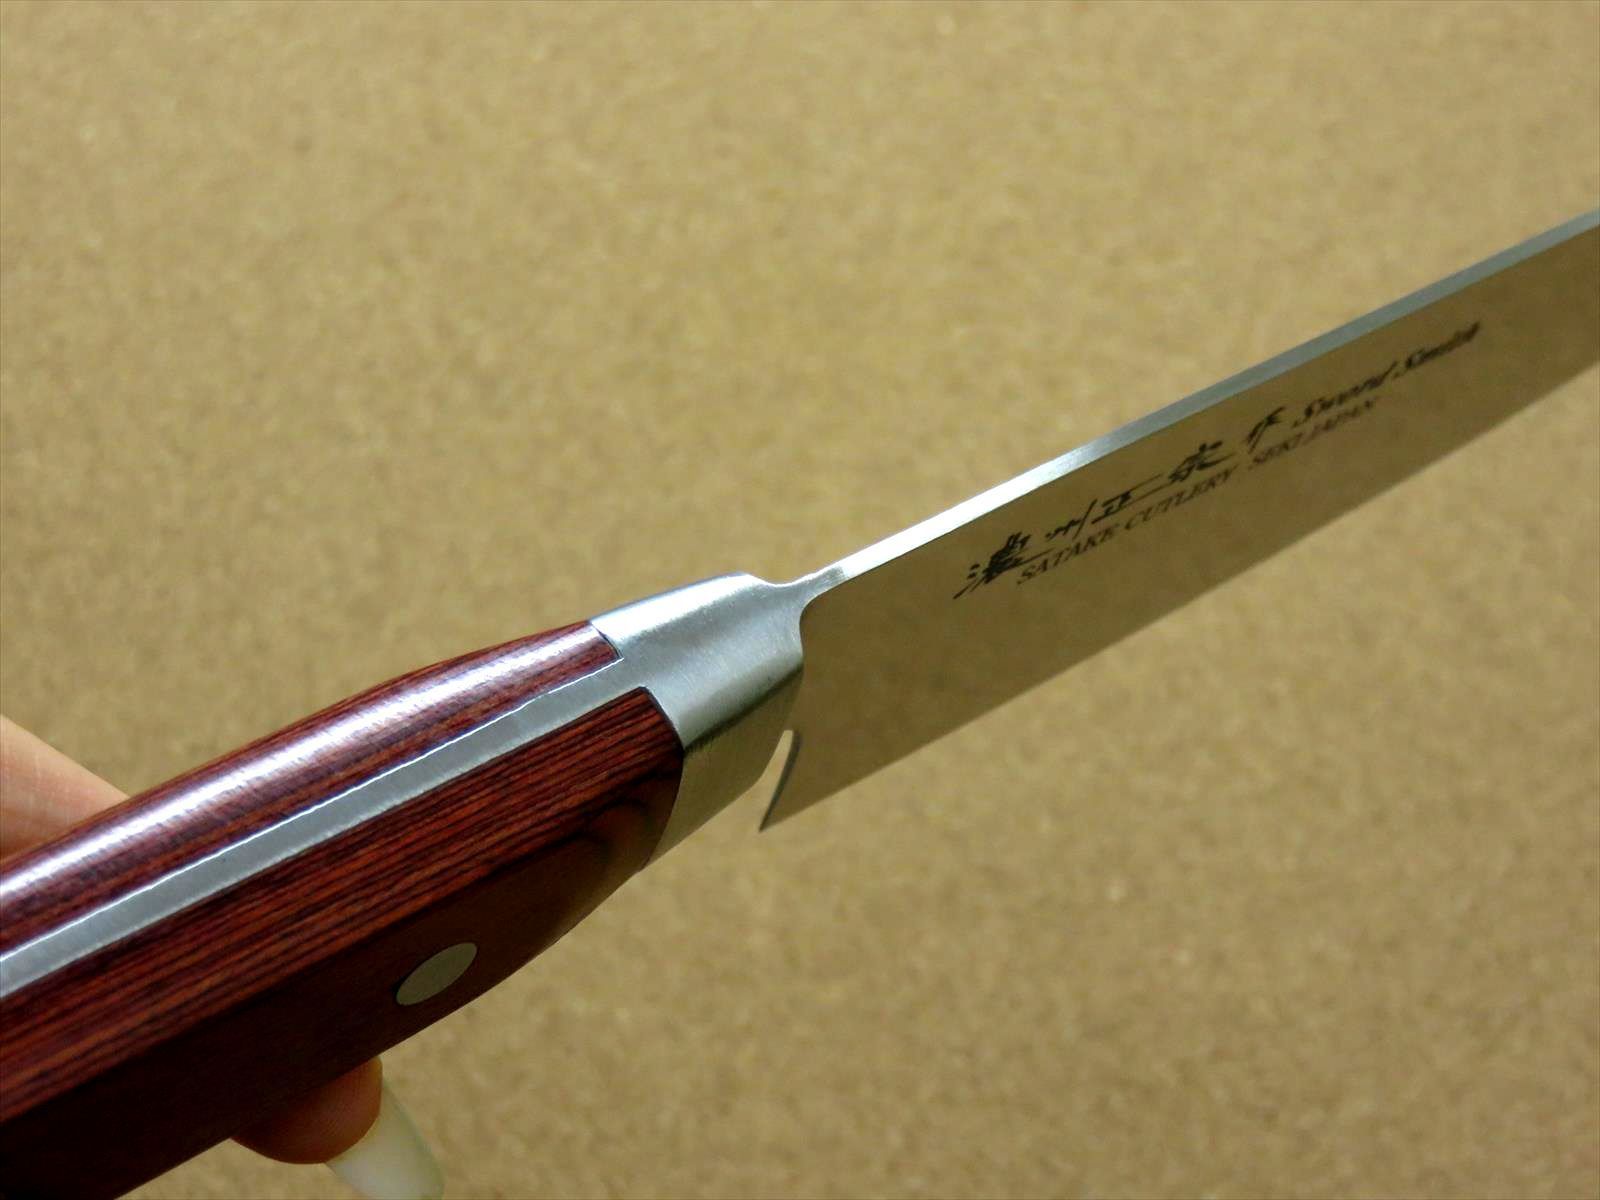 関の刃物 ペティナイフ 13.5cm (135mm) 濃州正宗作 モリブデンステンレス鋼 茶色積層強化木 小型包丁 両刃 果物包丁 皮むき 日本製 -  メルカリ